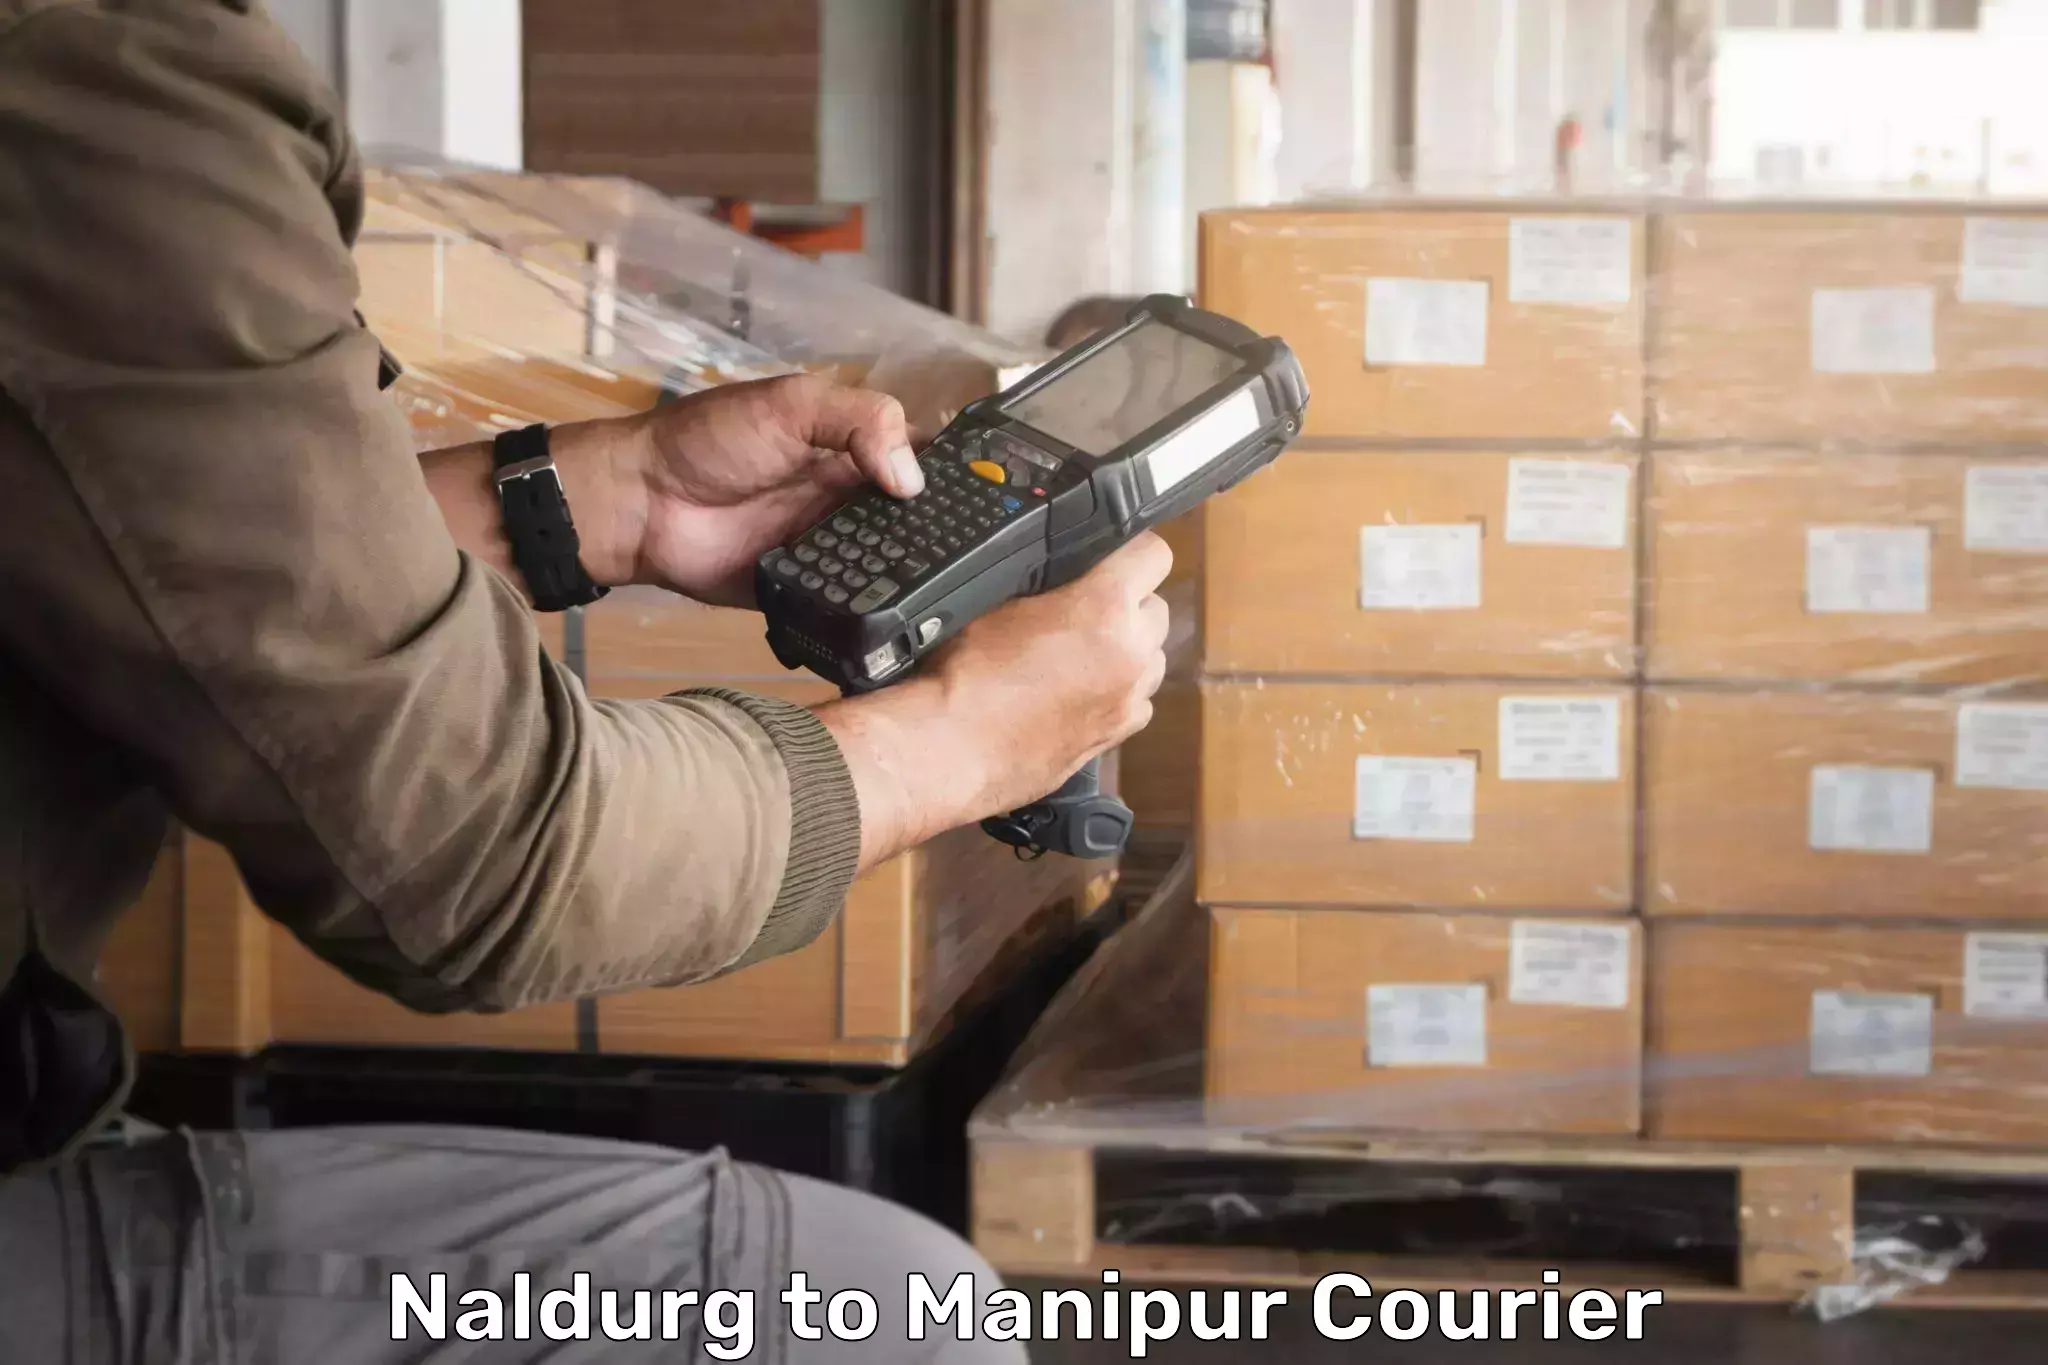 Courier service comparison in Naldurg to Churachandpur